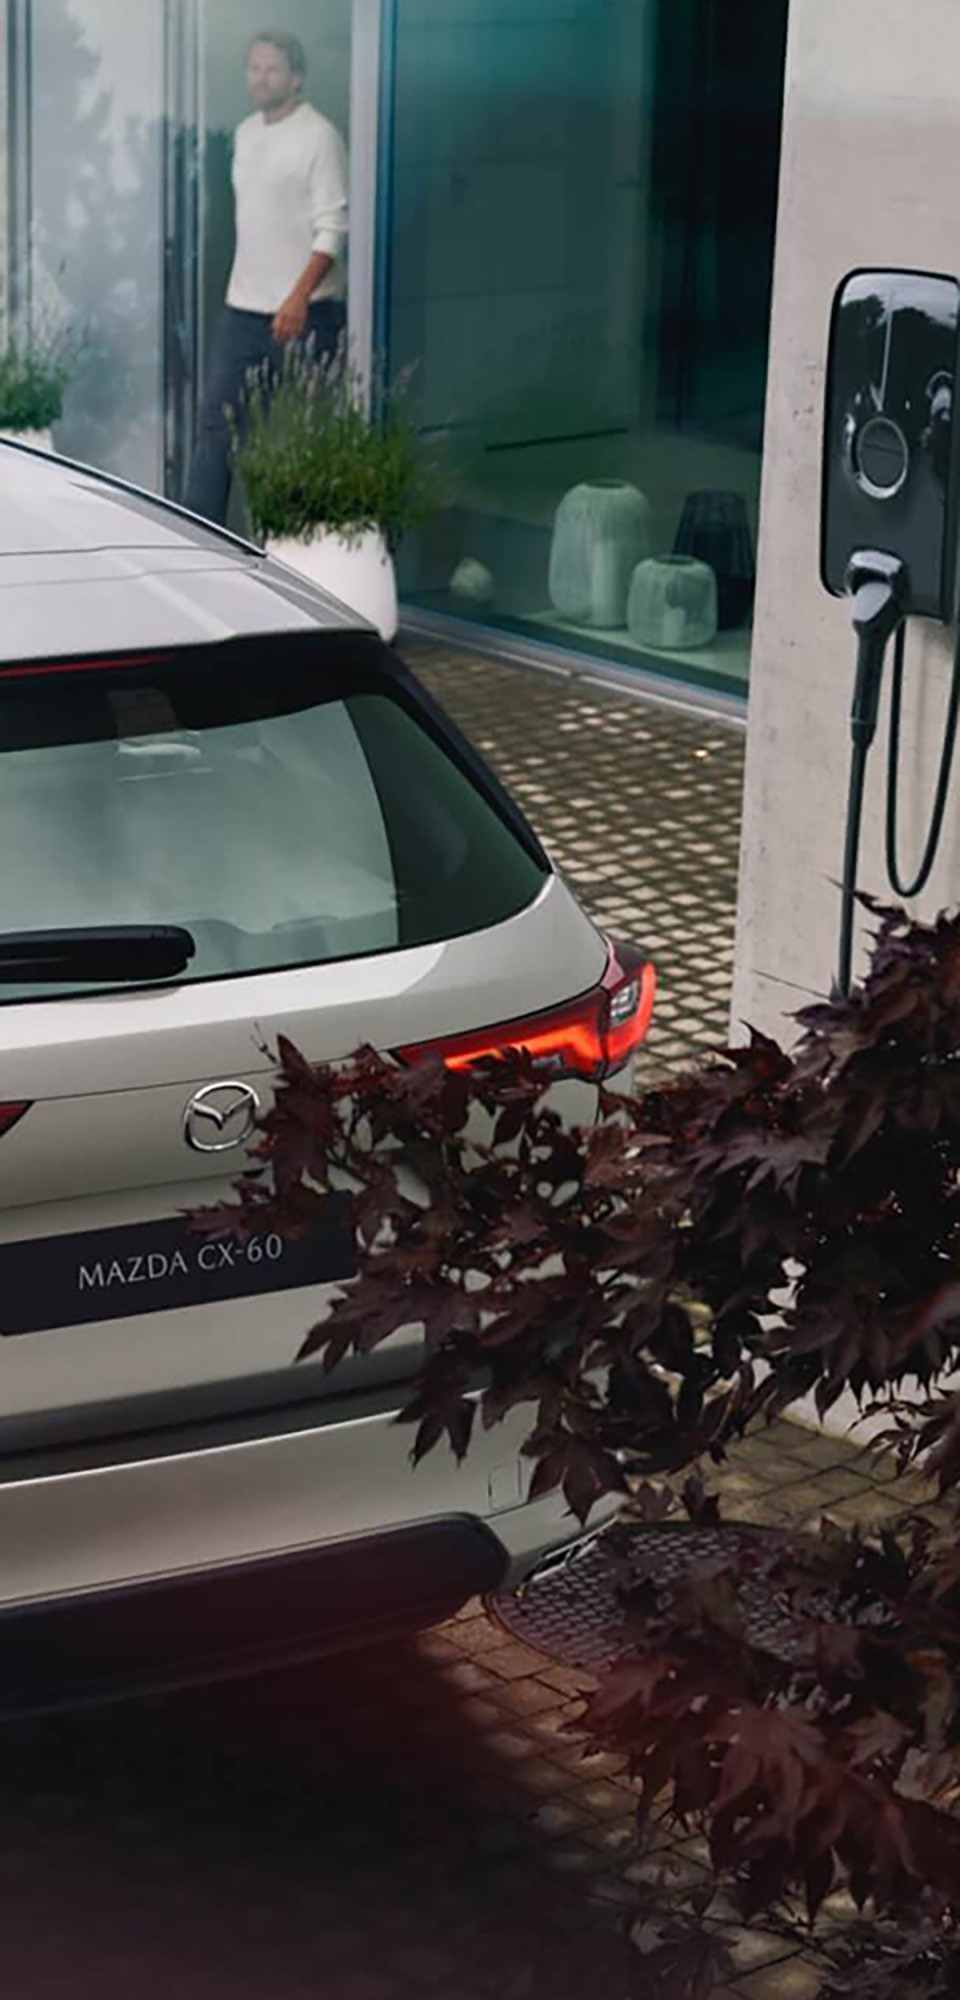 Το ολοκαίνουργιο plug-in υβριδικό SUV Mazda CX-60 σταθμευμένο δίπλα σε έναν σταθμό φόρτισης για οικιακή φόρτιση.